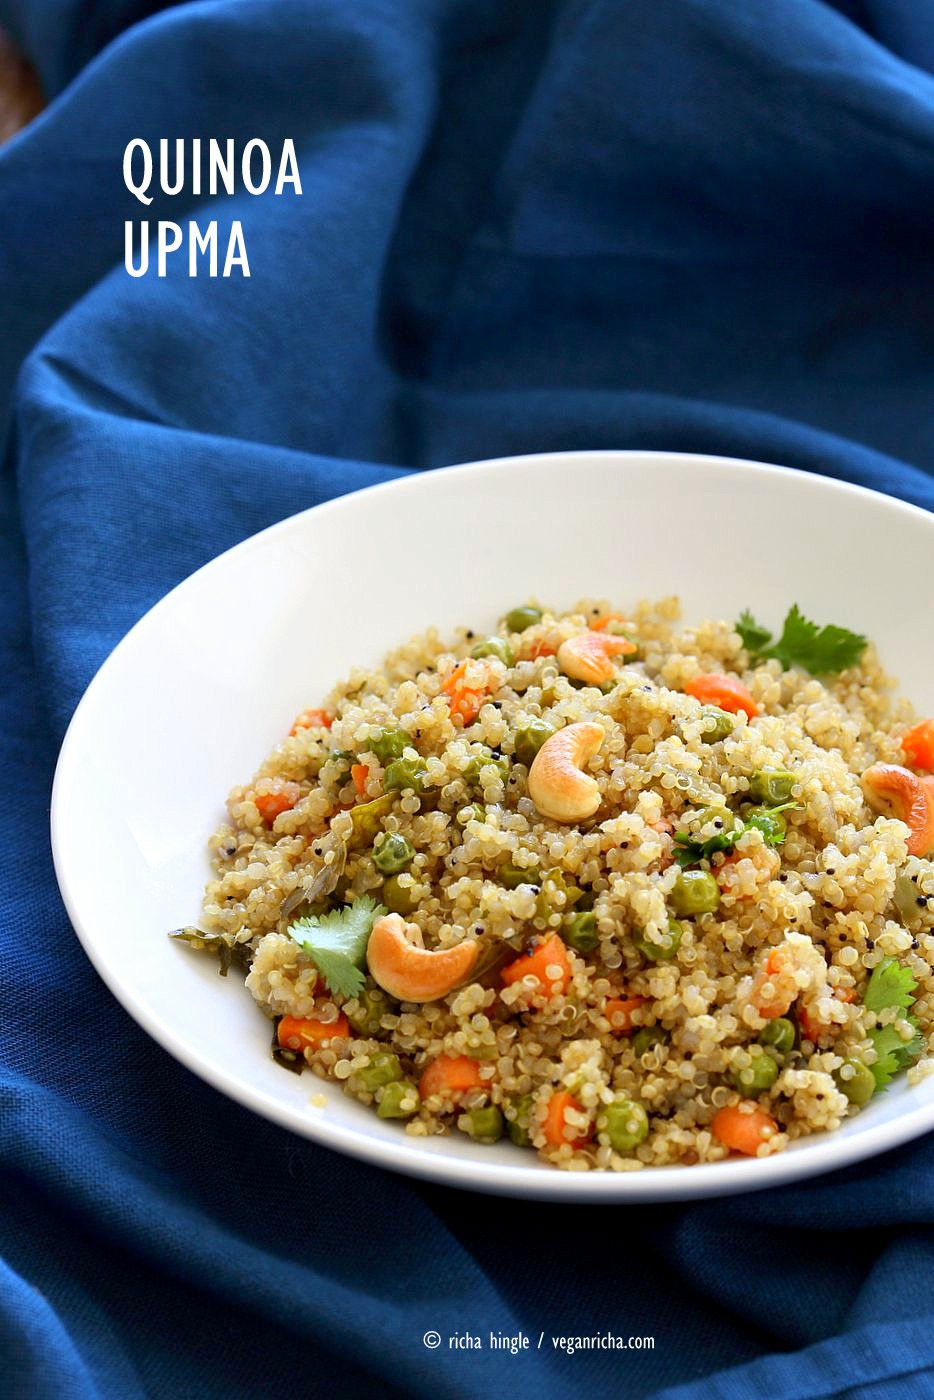 Vegan Recipes Of India
 Quinoa Upma Recipe Quinoa with Spices Carrots and Peas